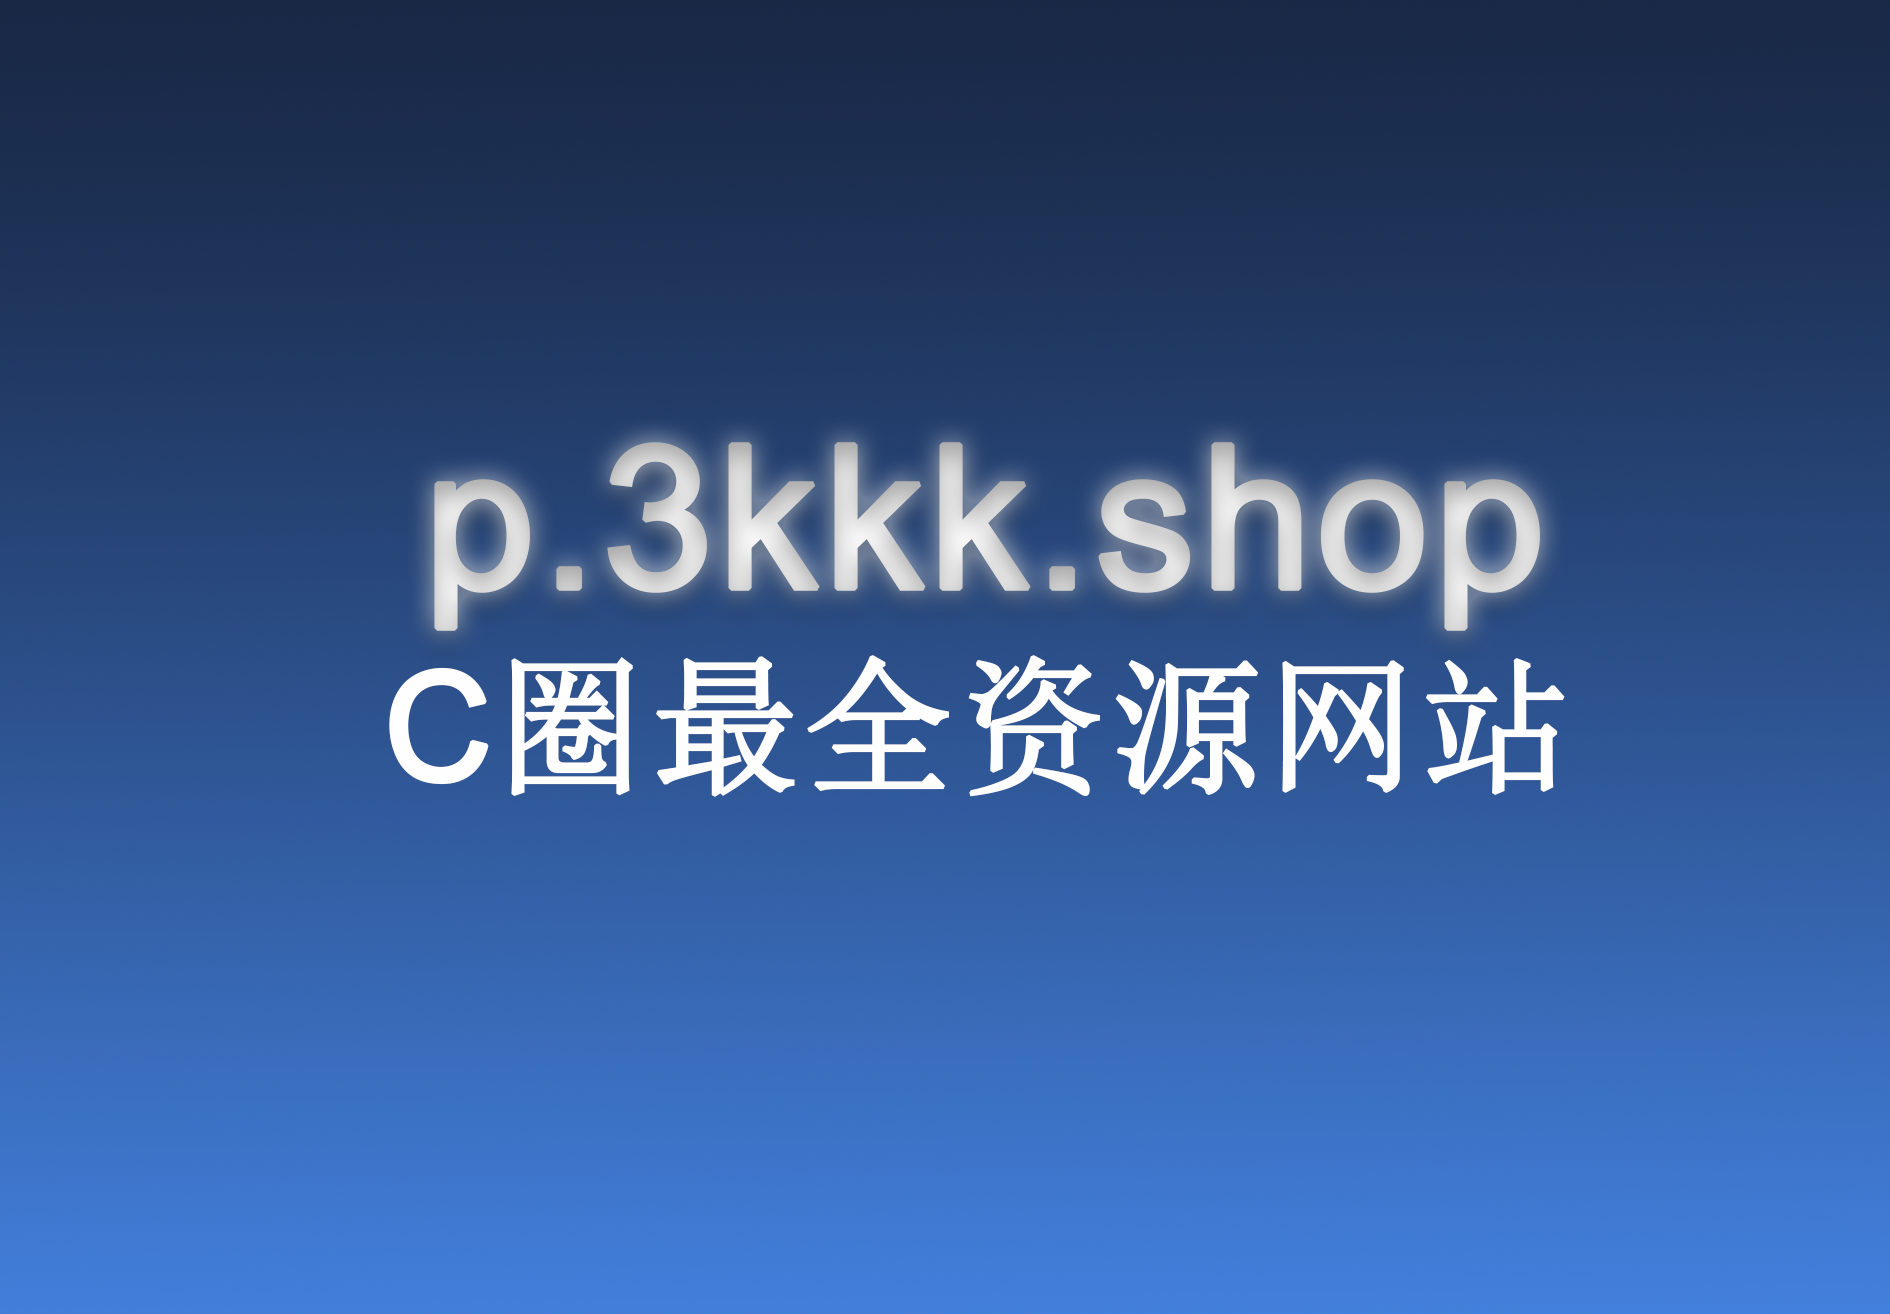 p.3kkk.shop